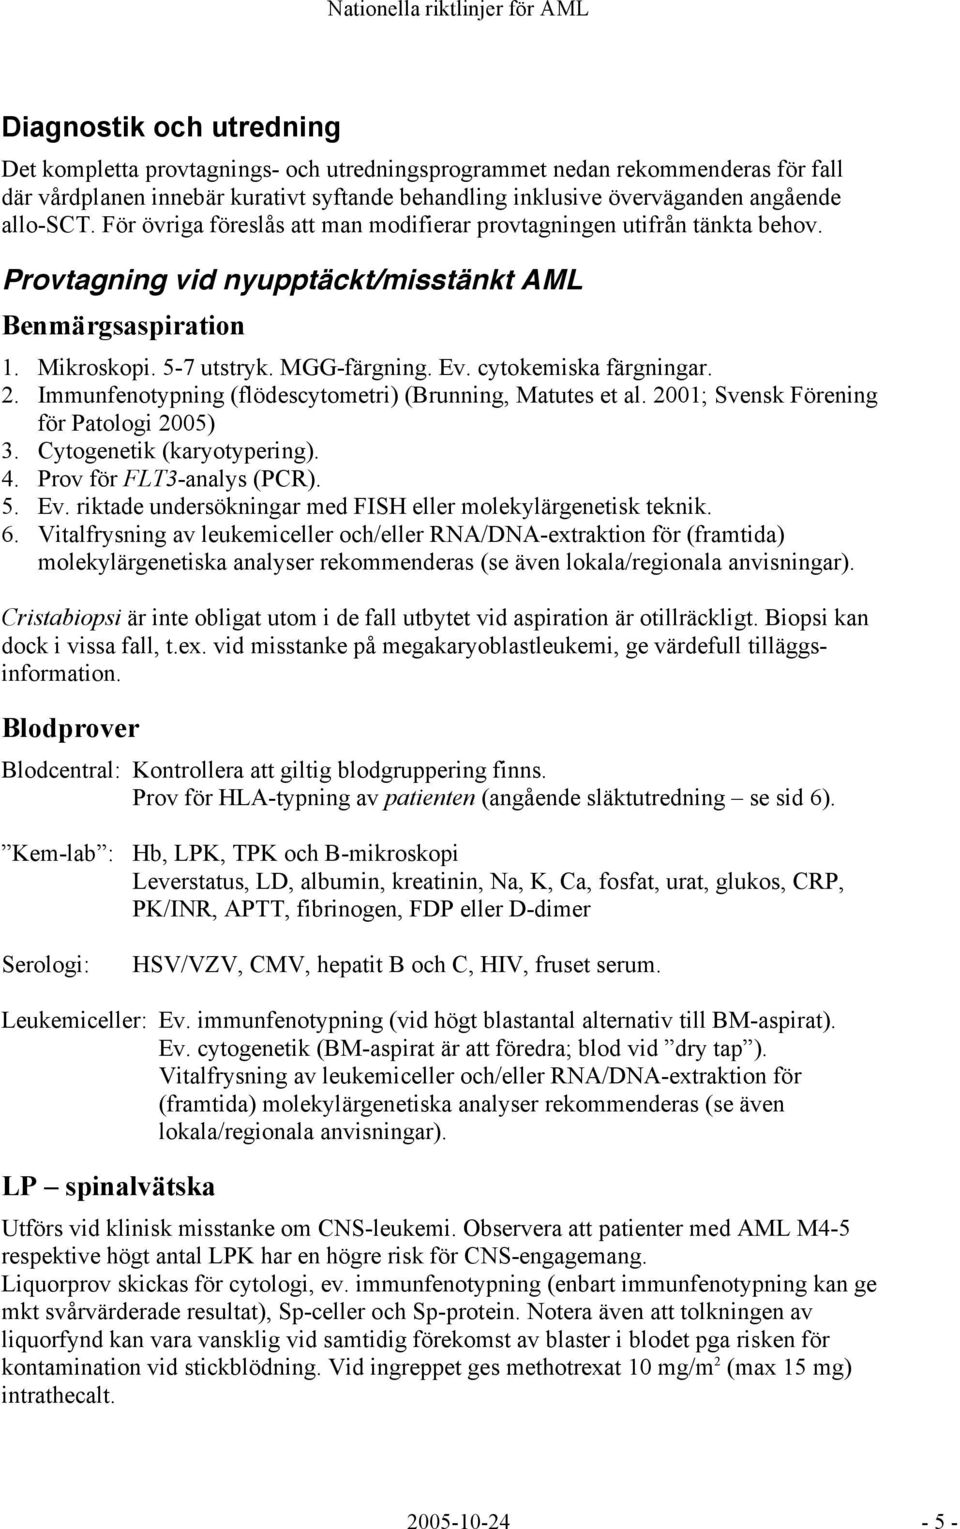 cytokemiska färgningar. 2. Immunfenotypning (flödescytometri) (Brunning, Matutes et al. 2001; Svensk Förening för Patologi 2005) 3. Cytogenetik (karyotypering). 4. Prov för FLT3-analys (PCR). 5. Ev.